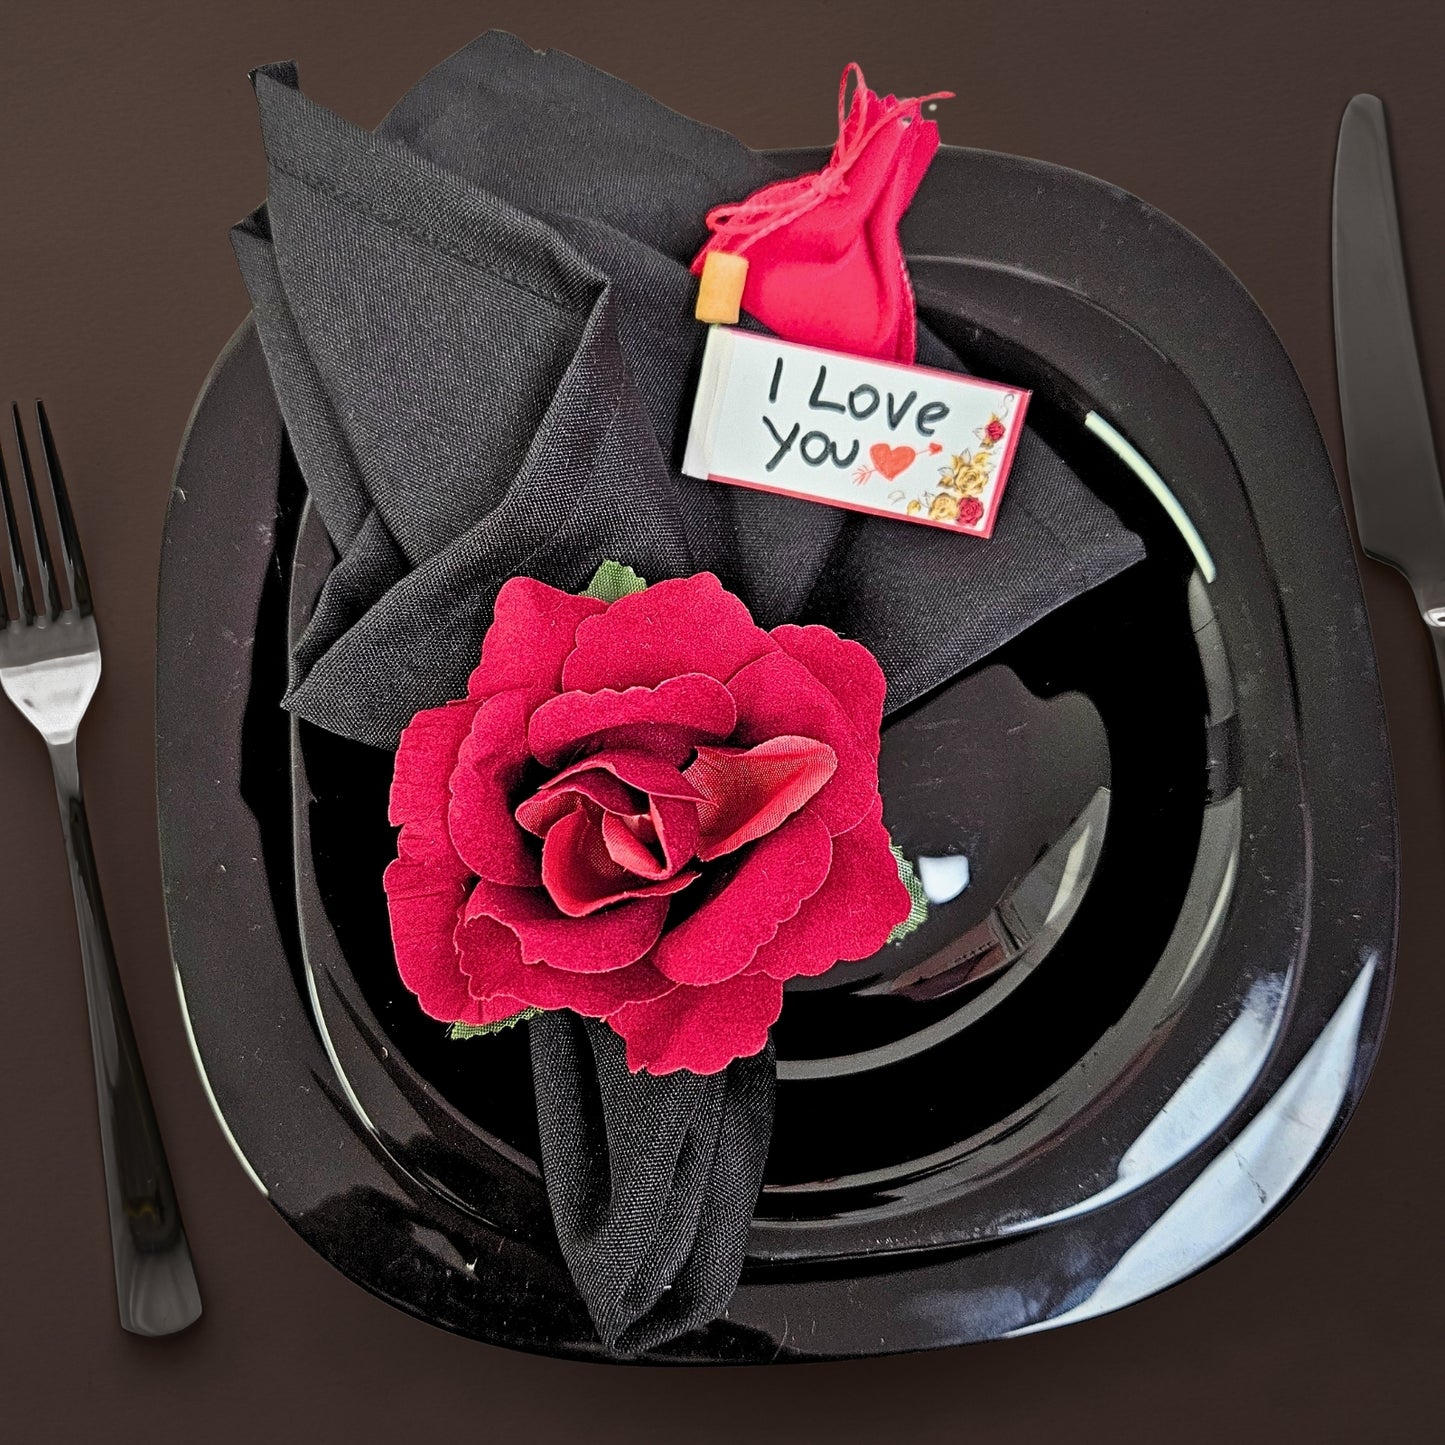 Charlo's Heart's Secrets Napkin Rings Red Colombiana Romantic Flower Rosebud